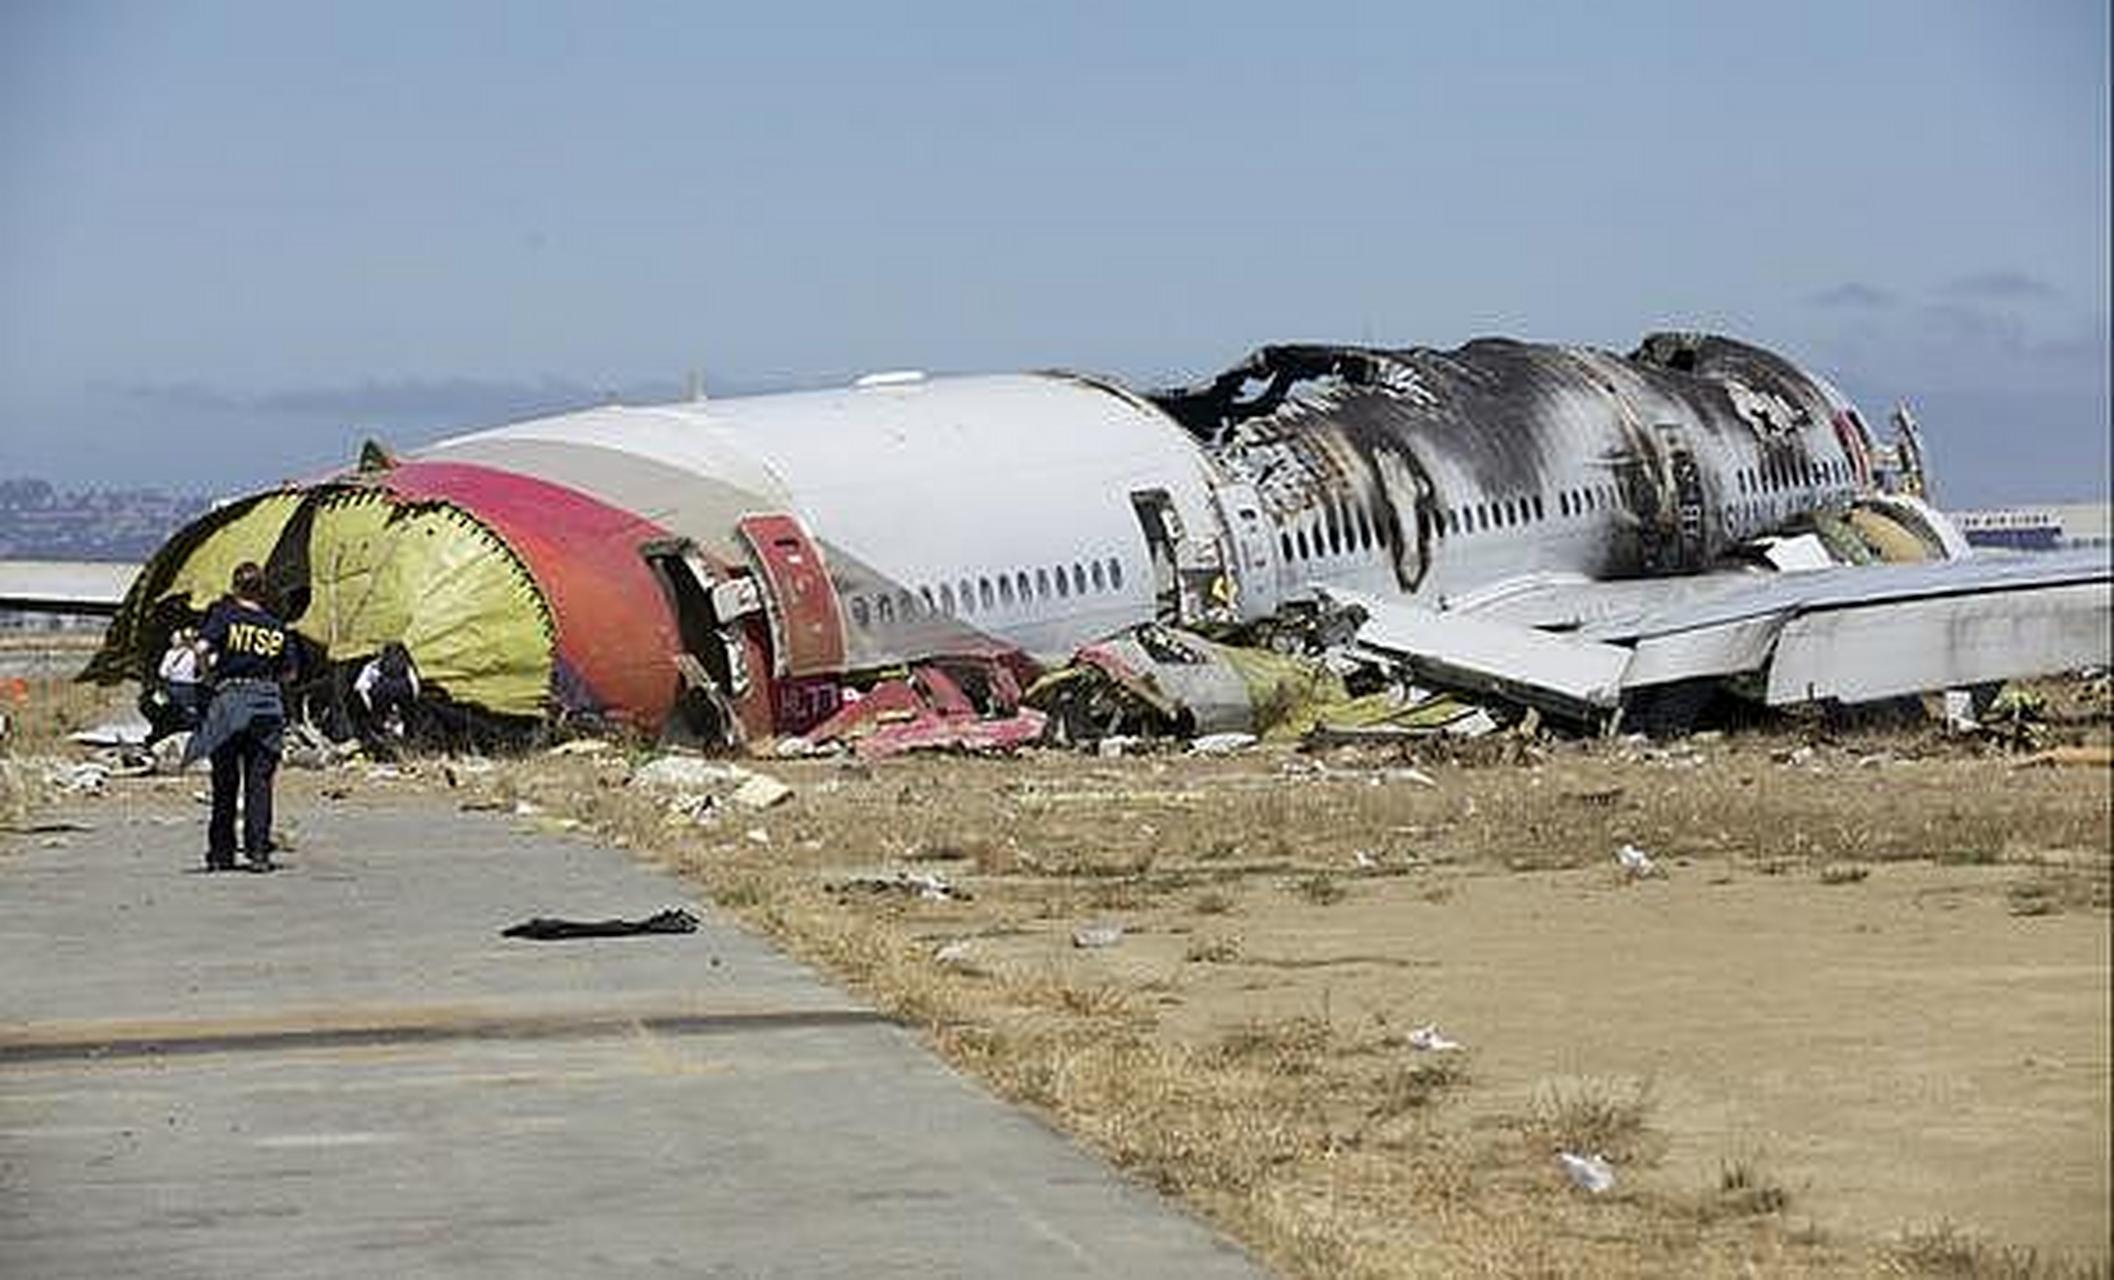 一架伊尔 76 运输机在俄边境州坠毁,机上 63 人